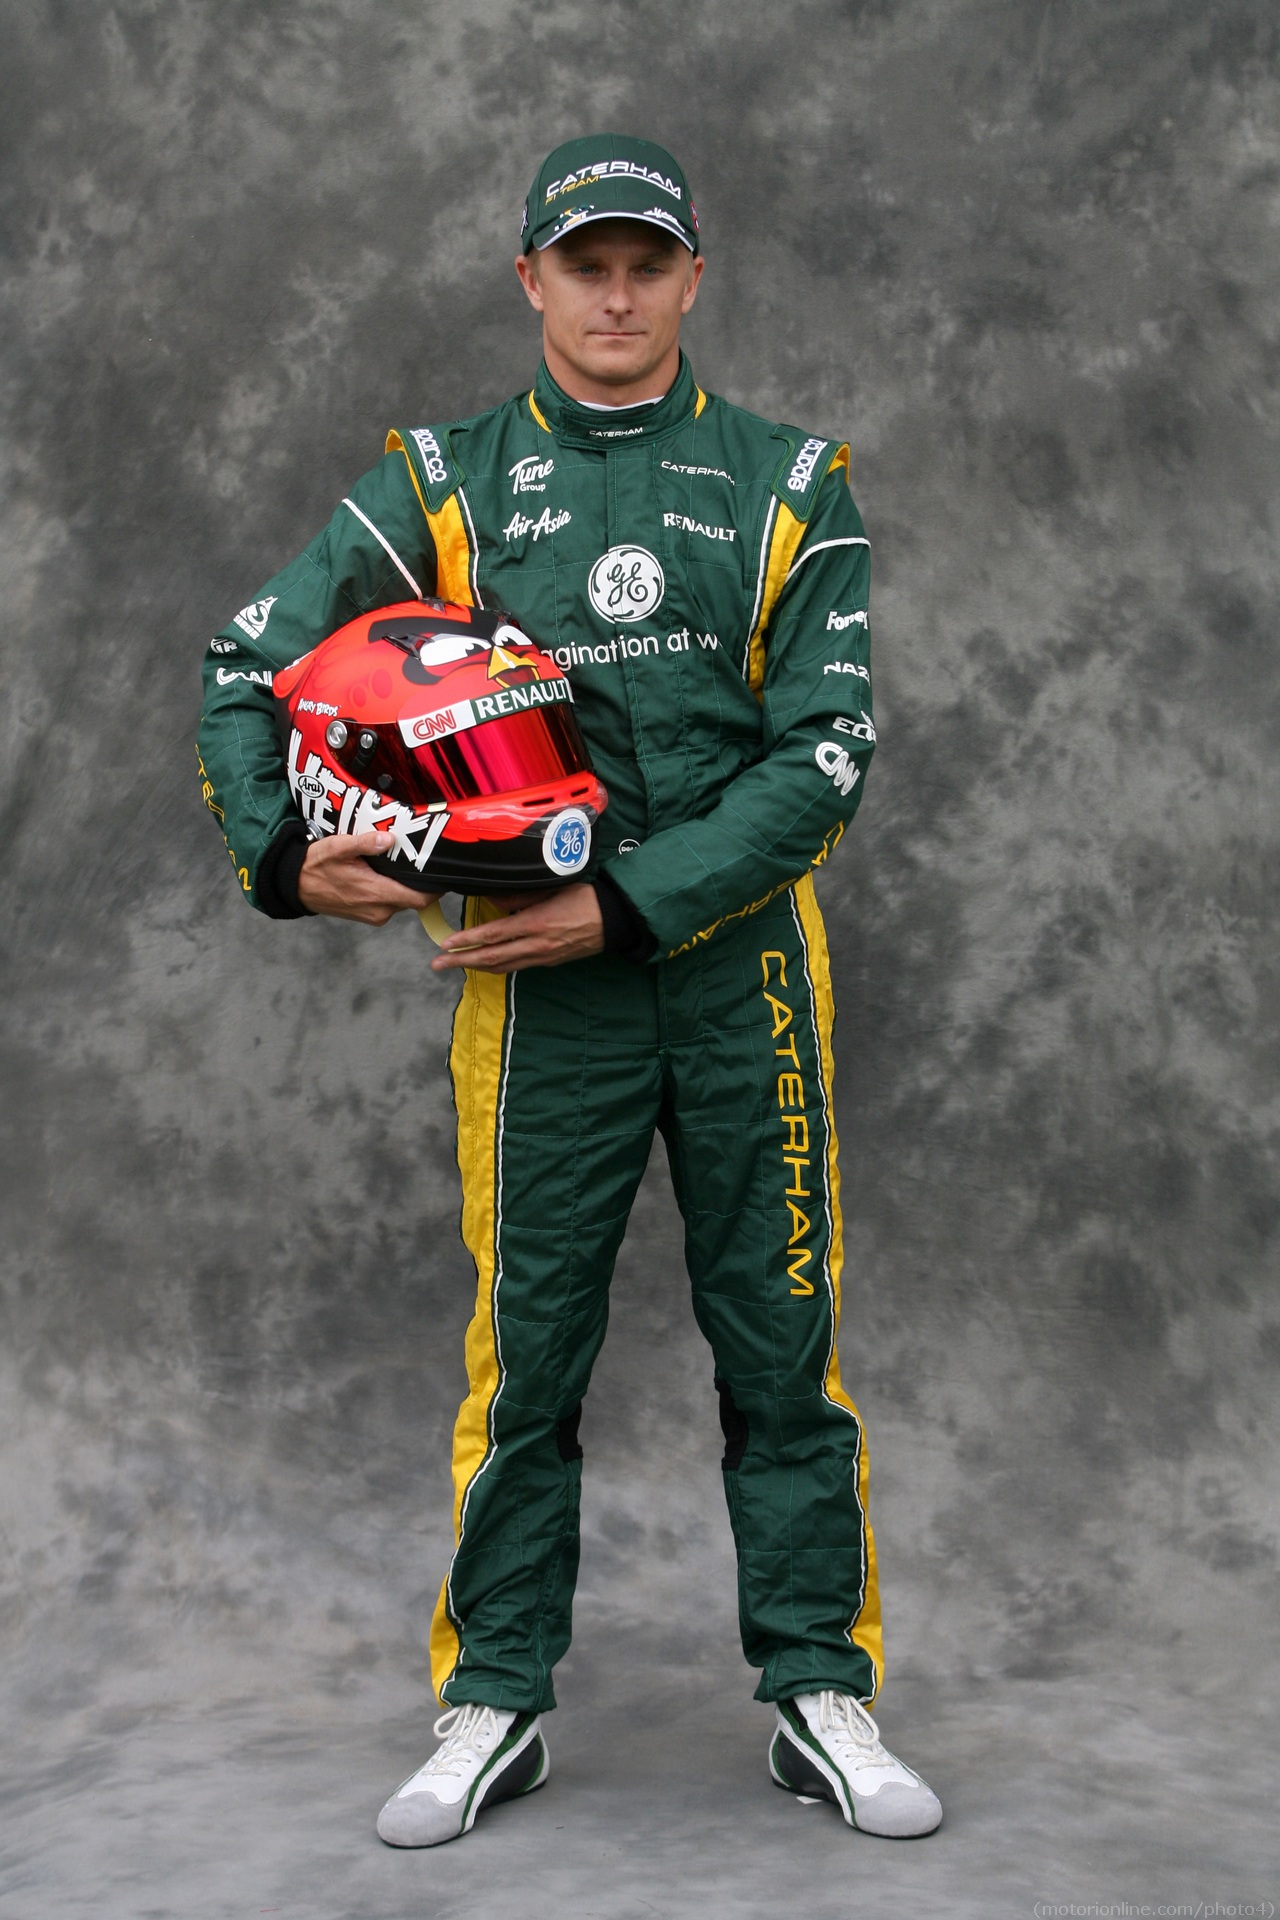 Heikki Kovalainen (FIN) Caterham F1 Team